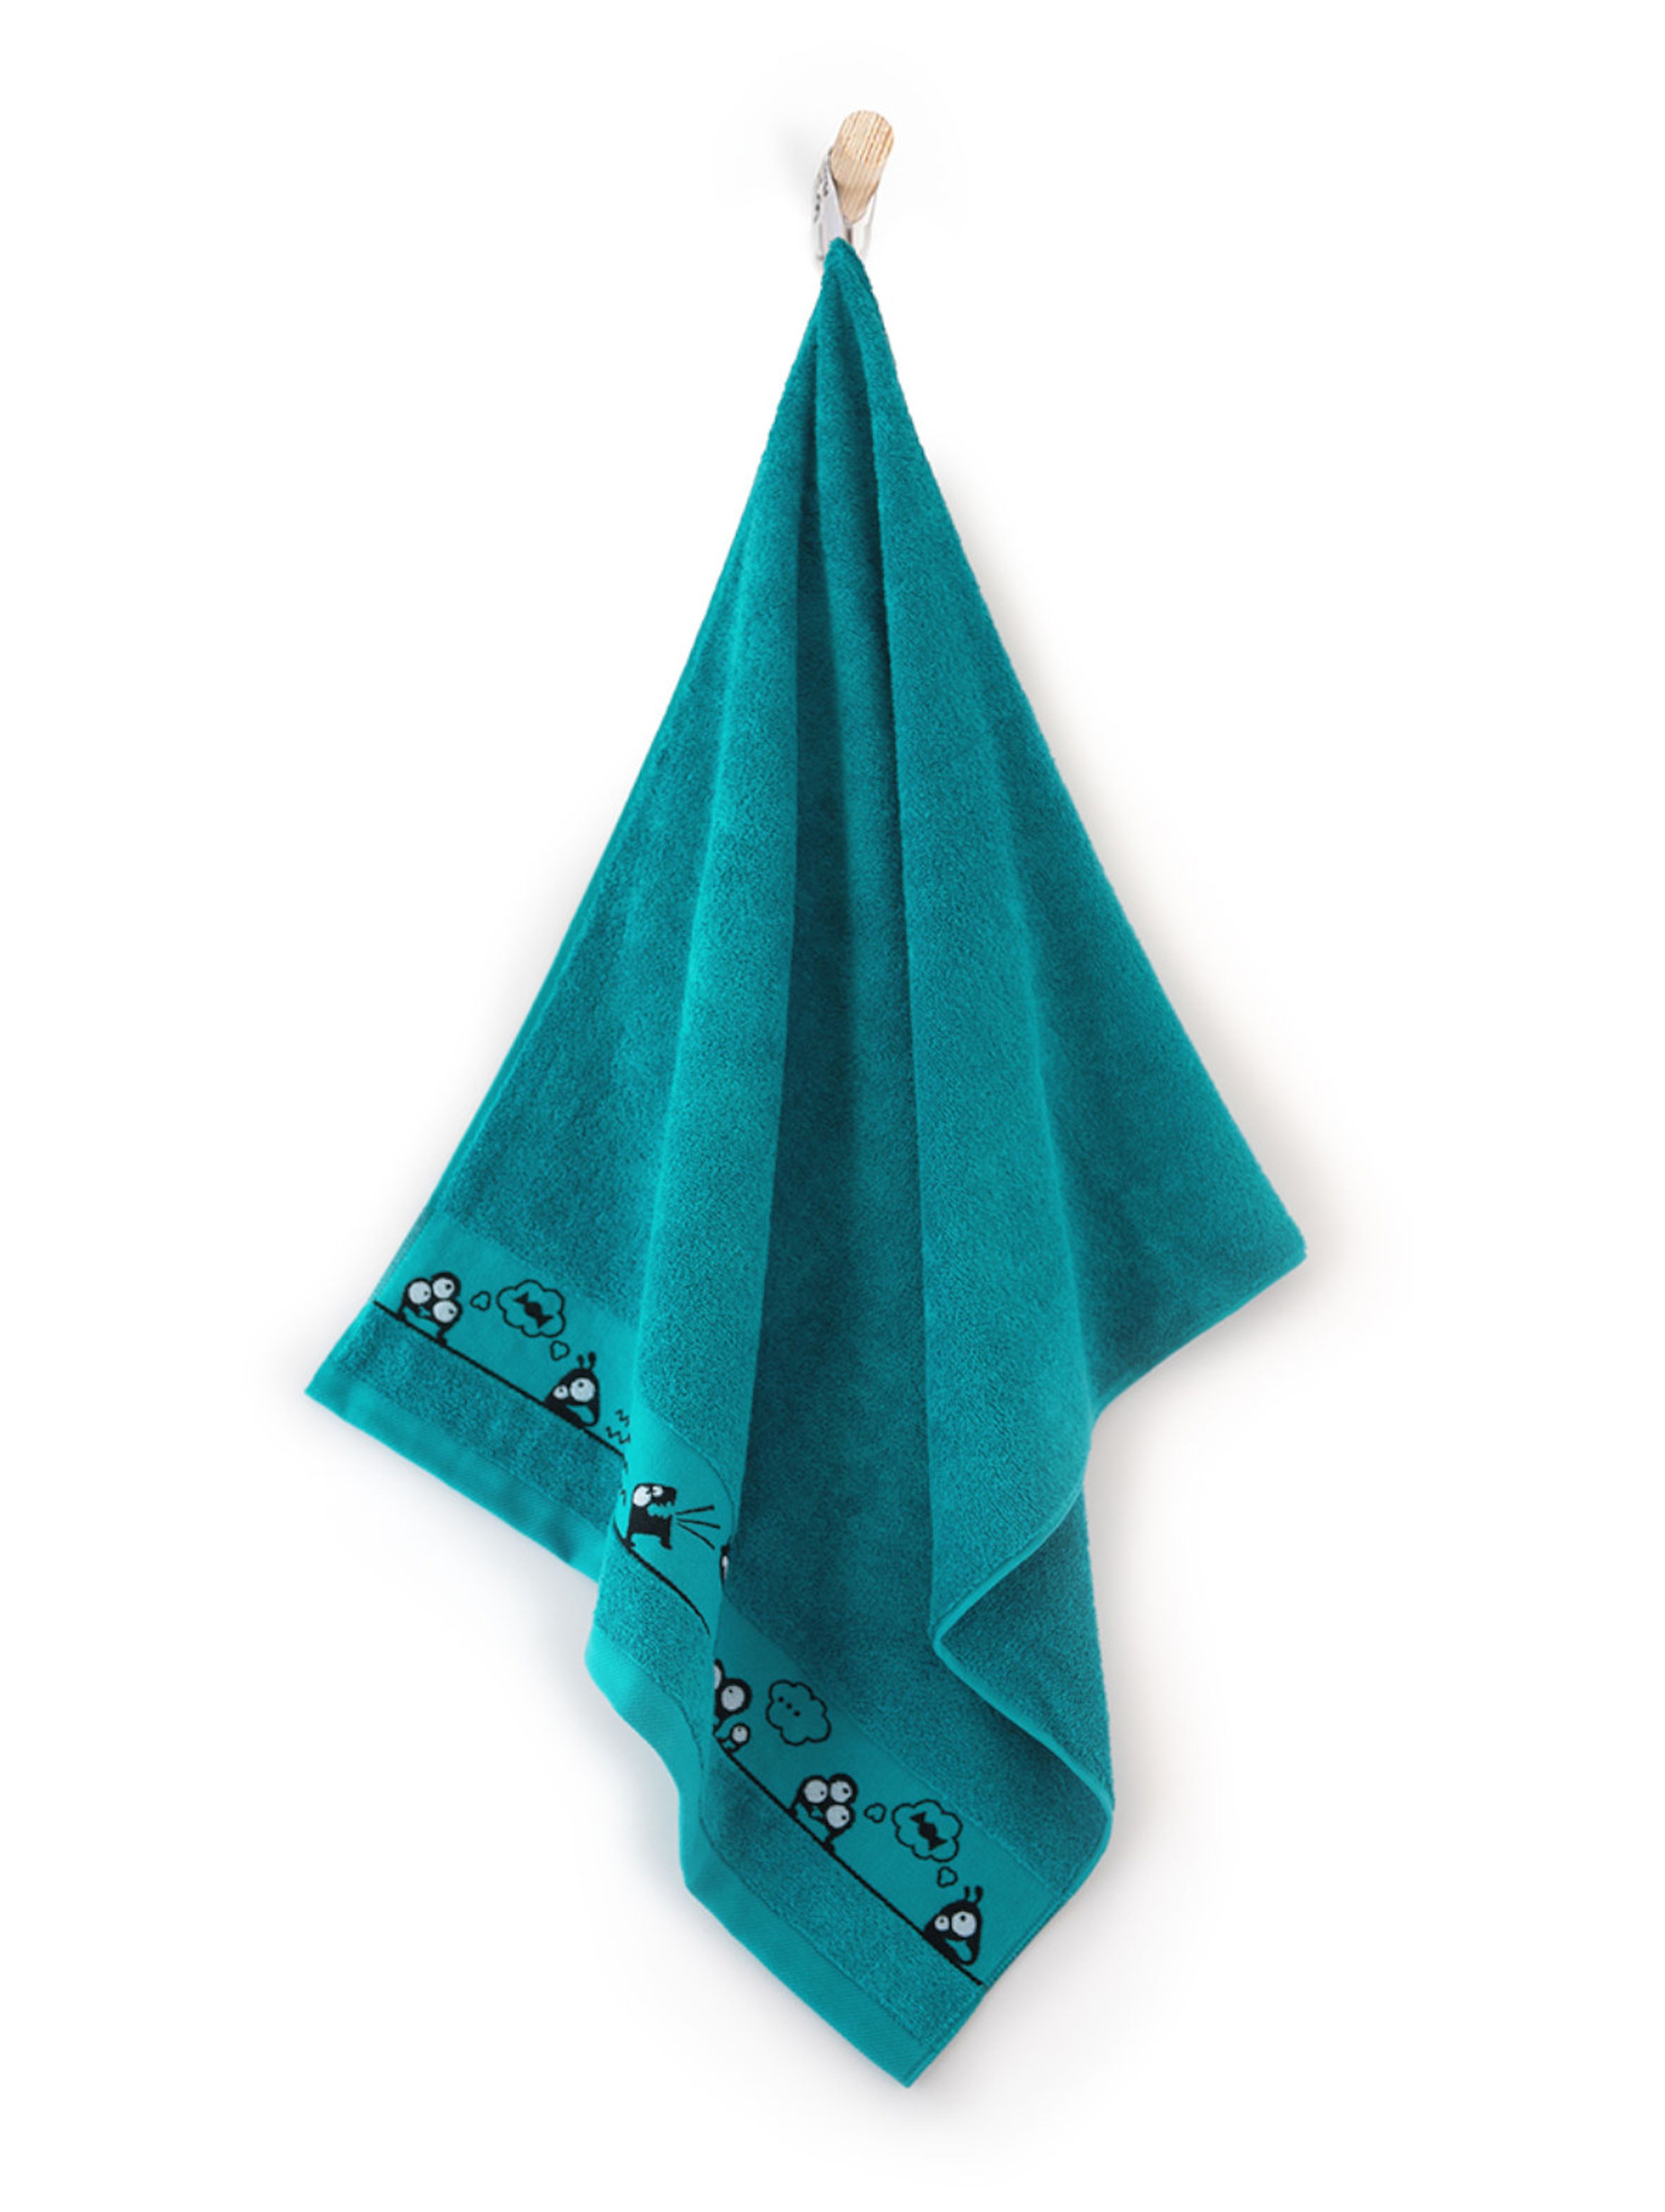 Ręcznik Oczaki z bawełny egipskiej zielony 70x130cm